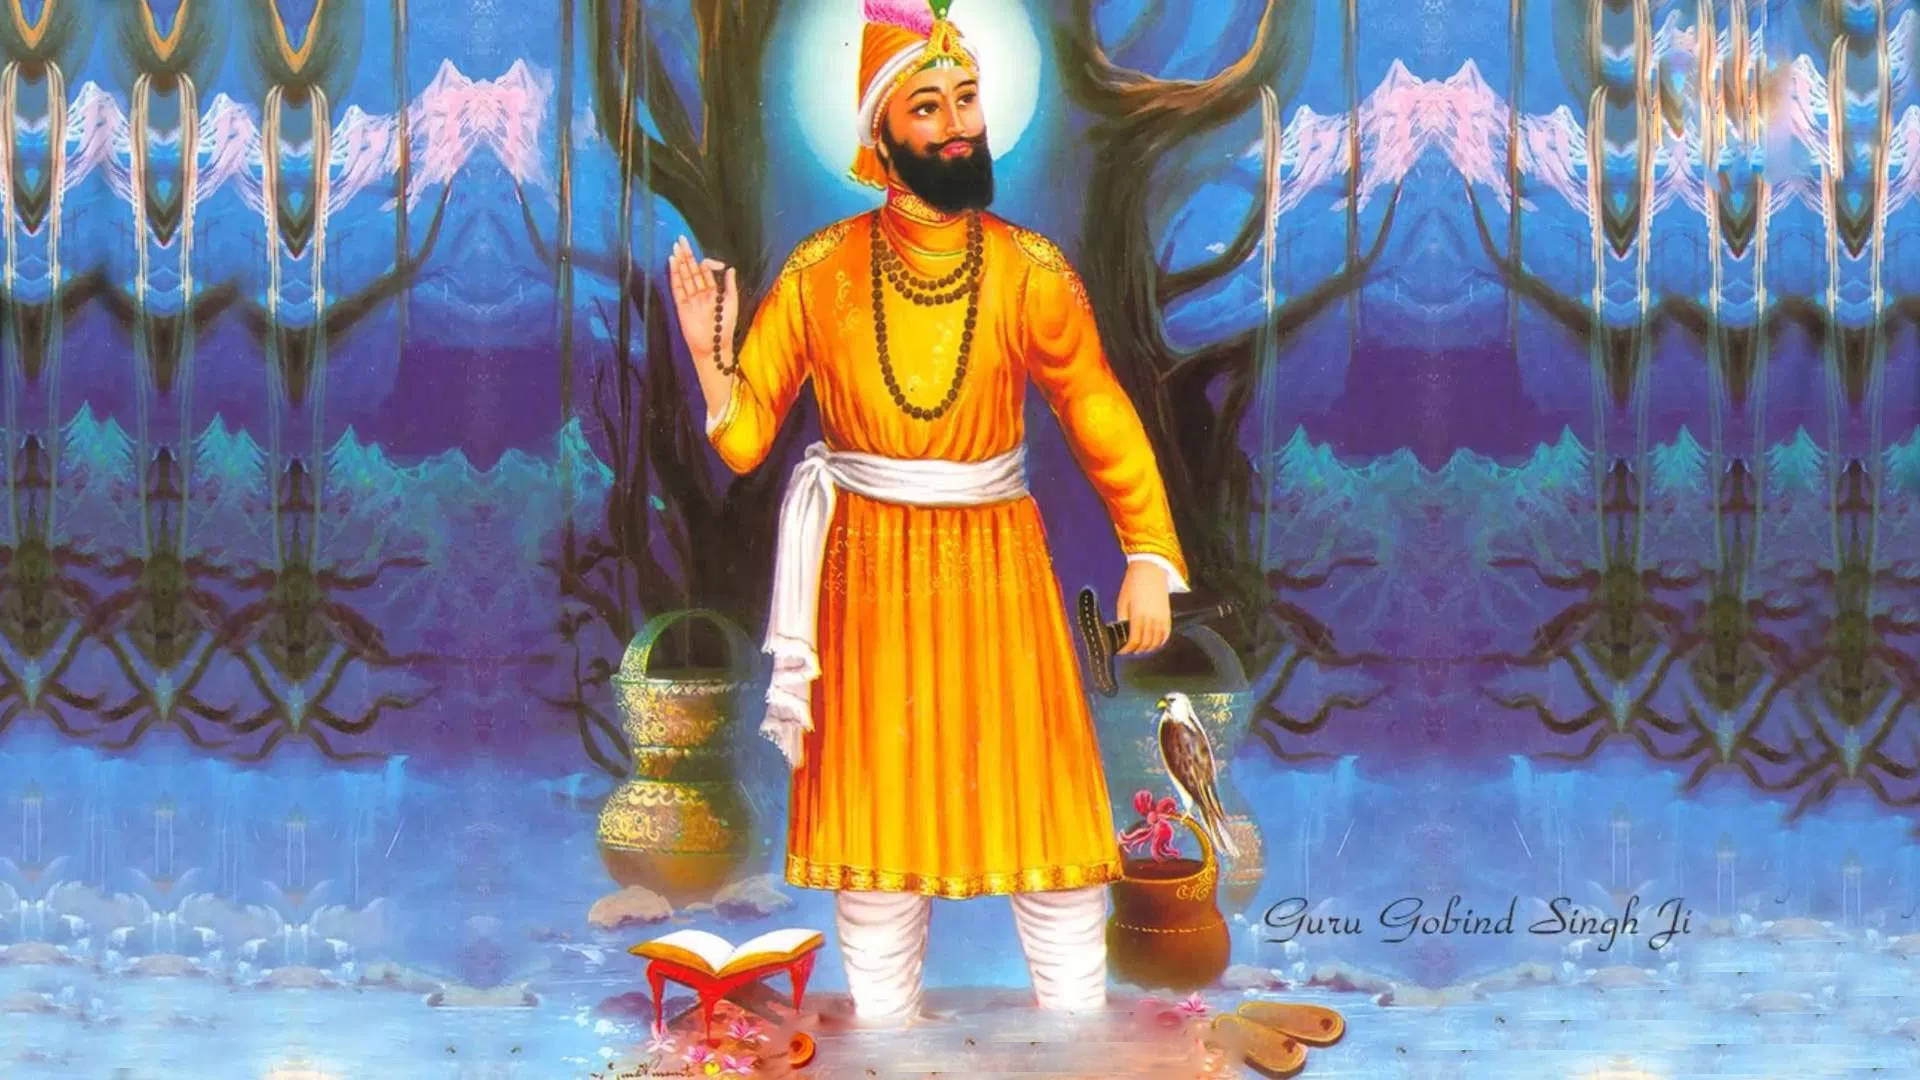 Gurugobind Singh Ji Arte Tradicional - Papel De Parede De Computador Ou Celular Papel de Parede